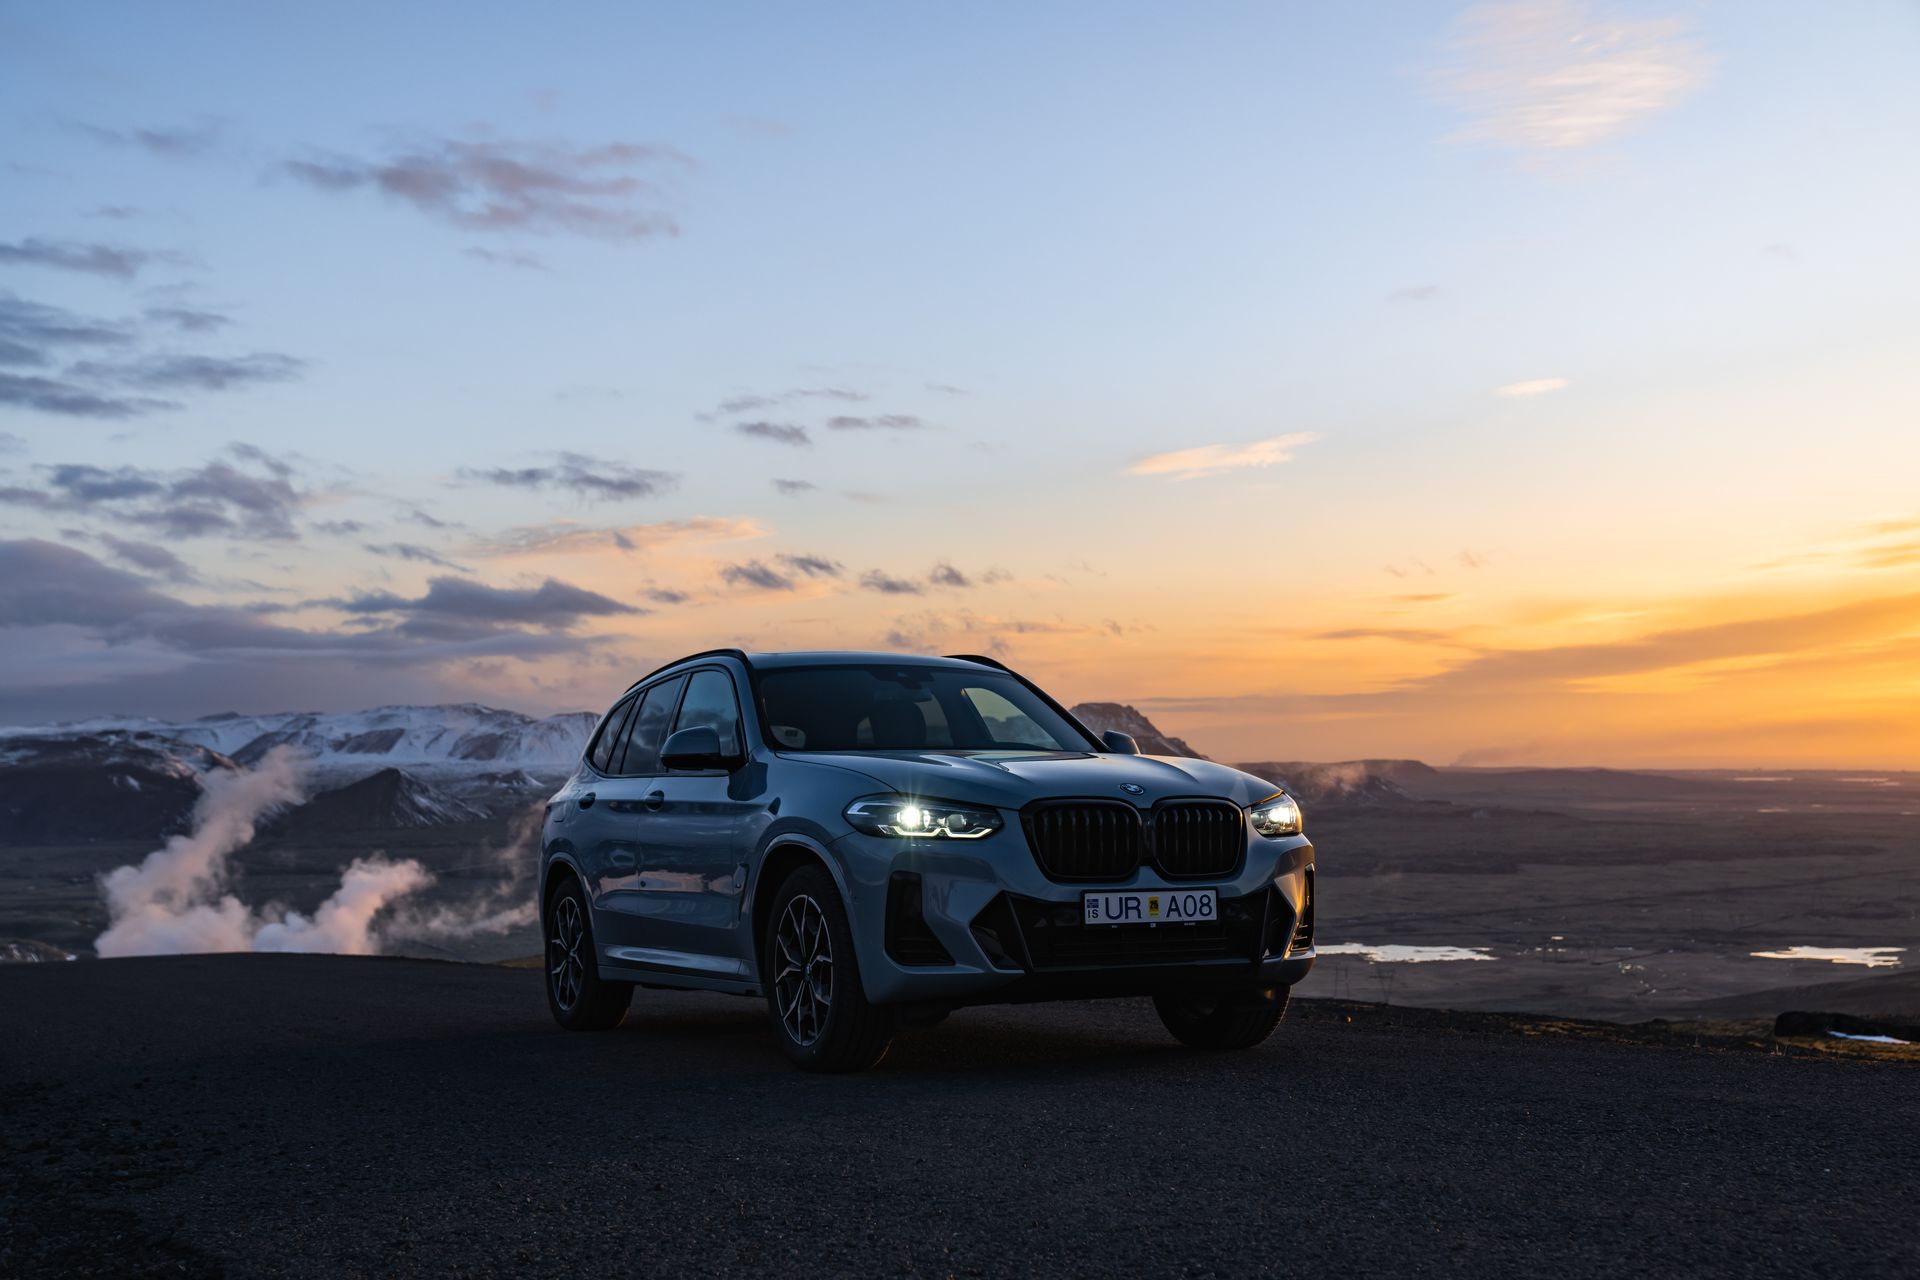 Coche BMW X3 gris oscuro aparcado en la cima de una montaña bajo una puesta de sol islandesa